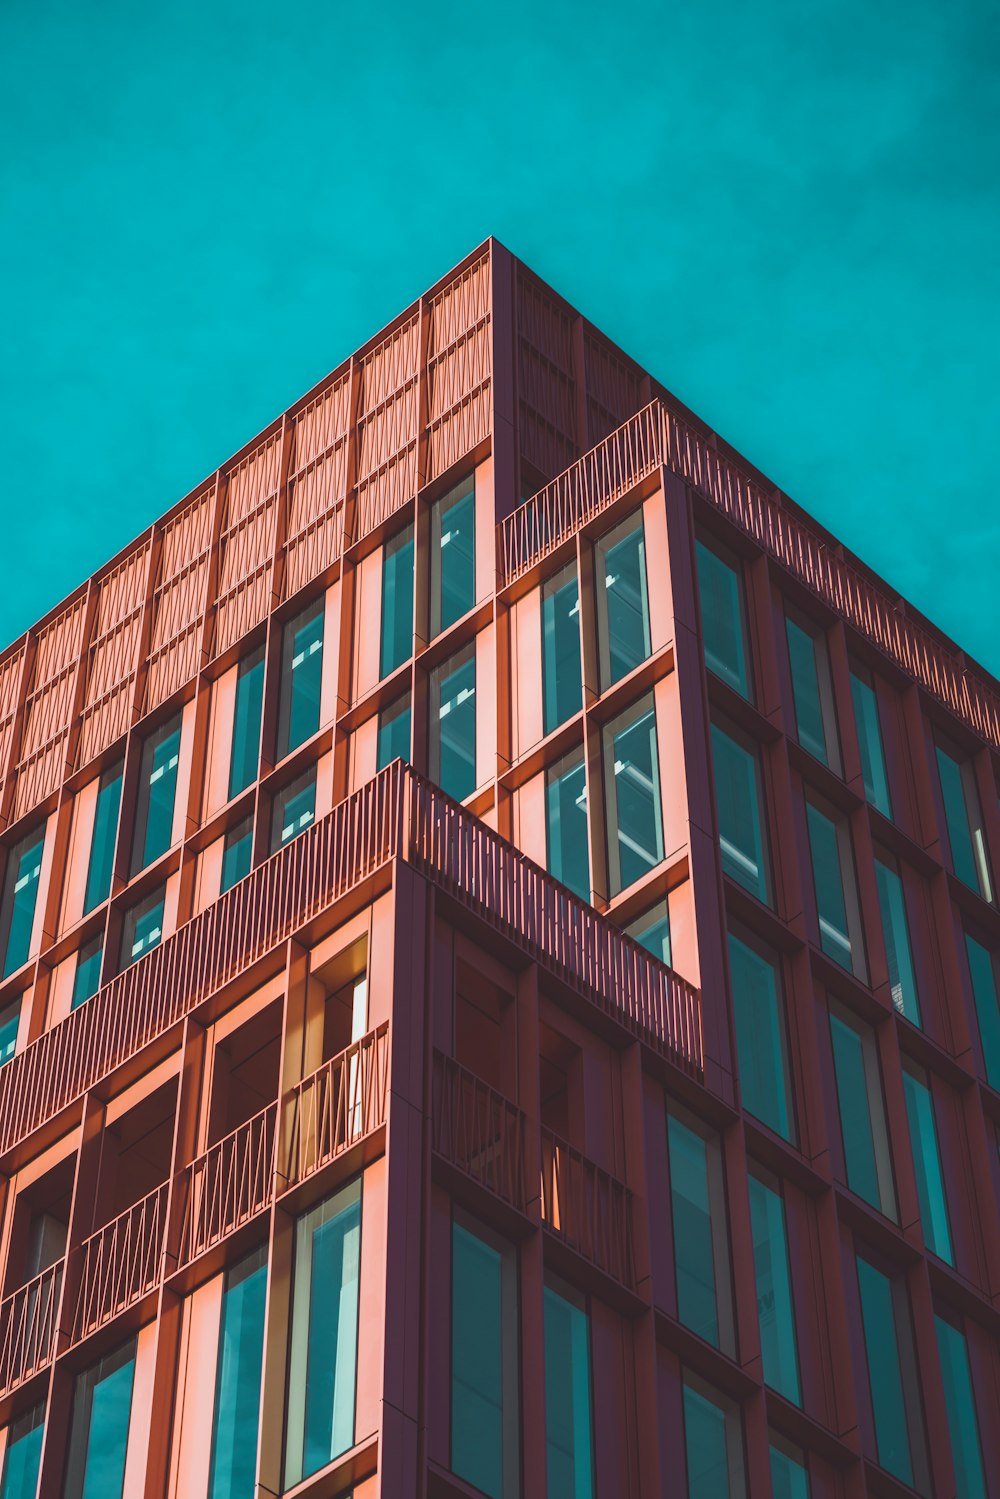 Photographie d’architecture d’un bâtiment en béton sous un ciel bleu clair